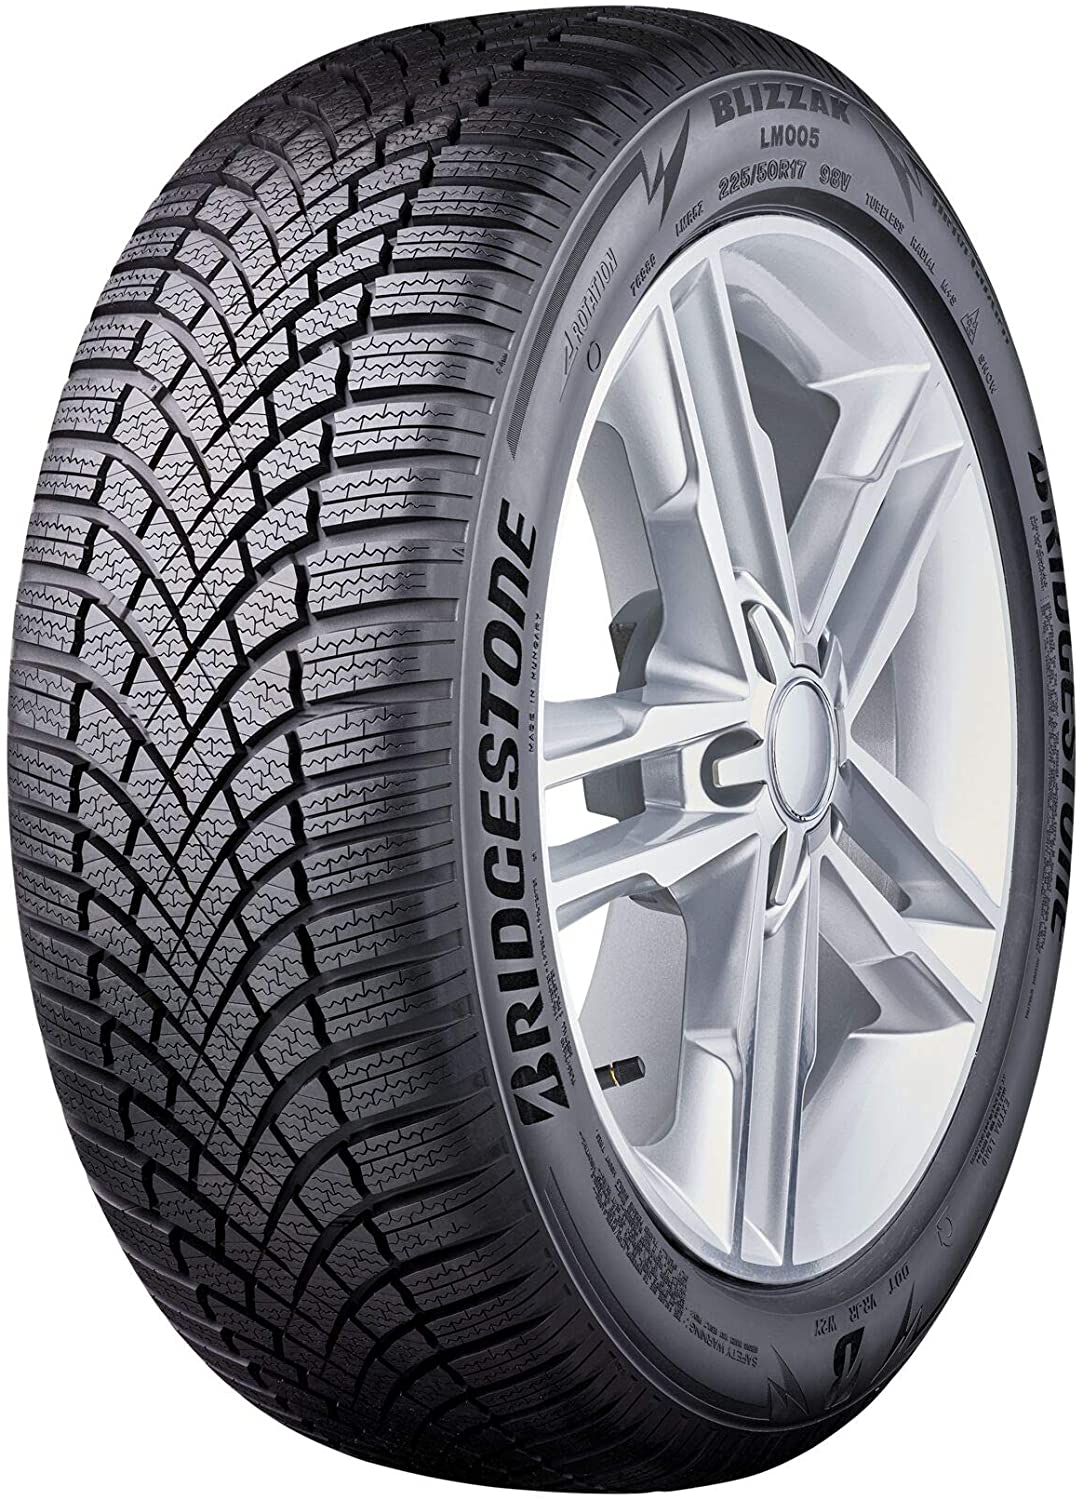 Bridgestone Blizzak LM005 - Tire Reviews and Tests